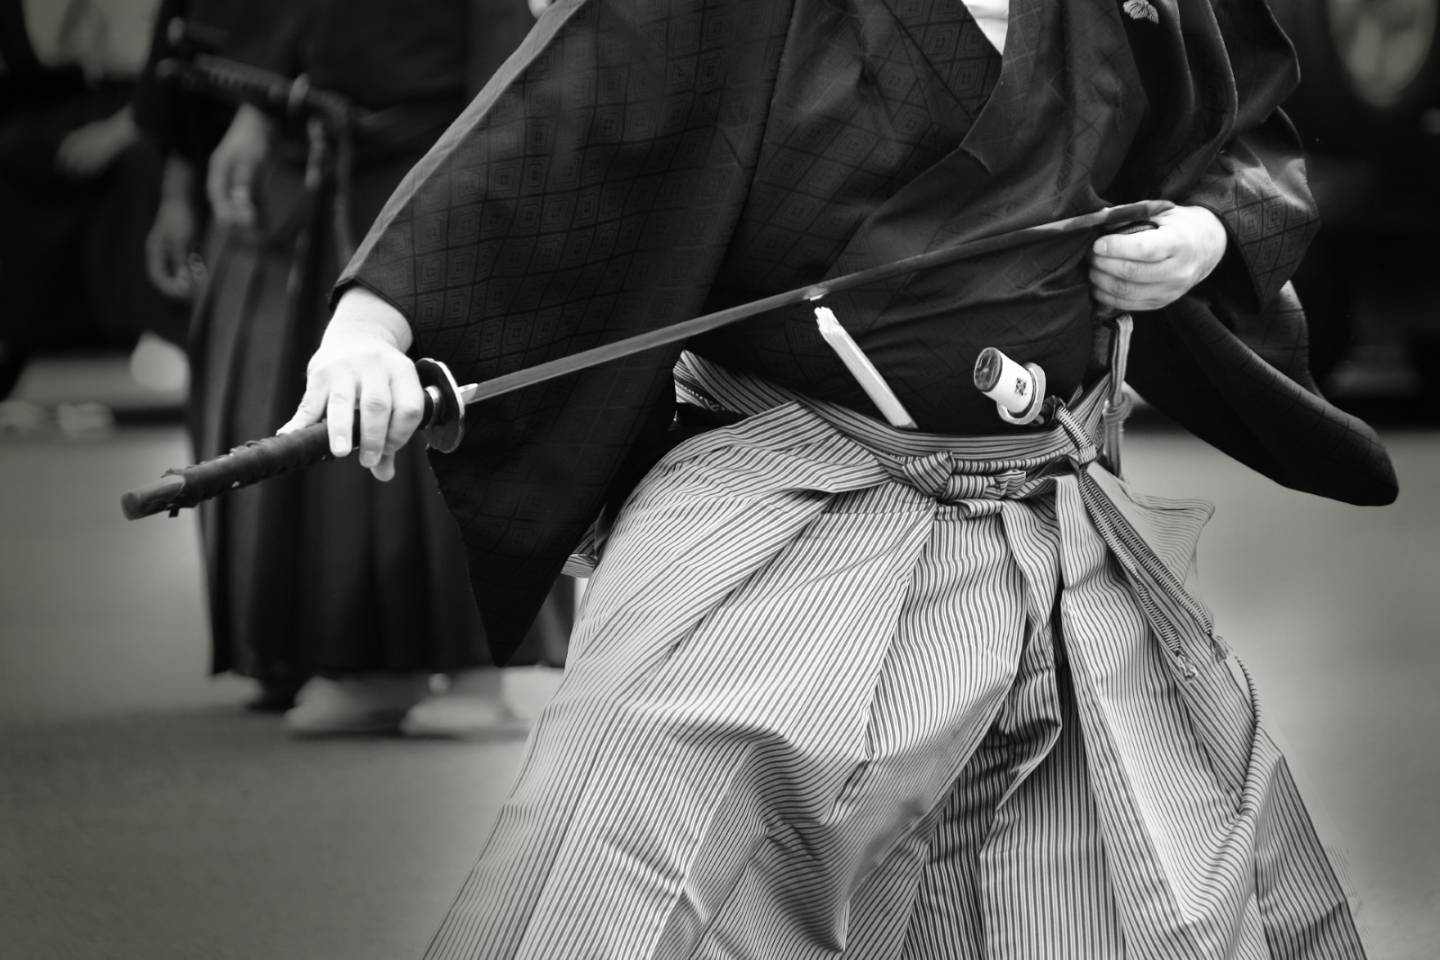 Ein in japanischem Gewand gekleideter Mann zieht ein Katana aus der Scheide